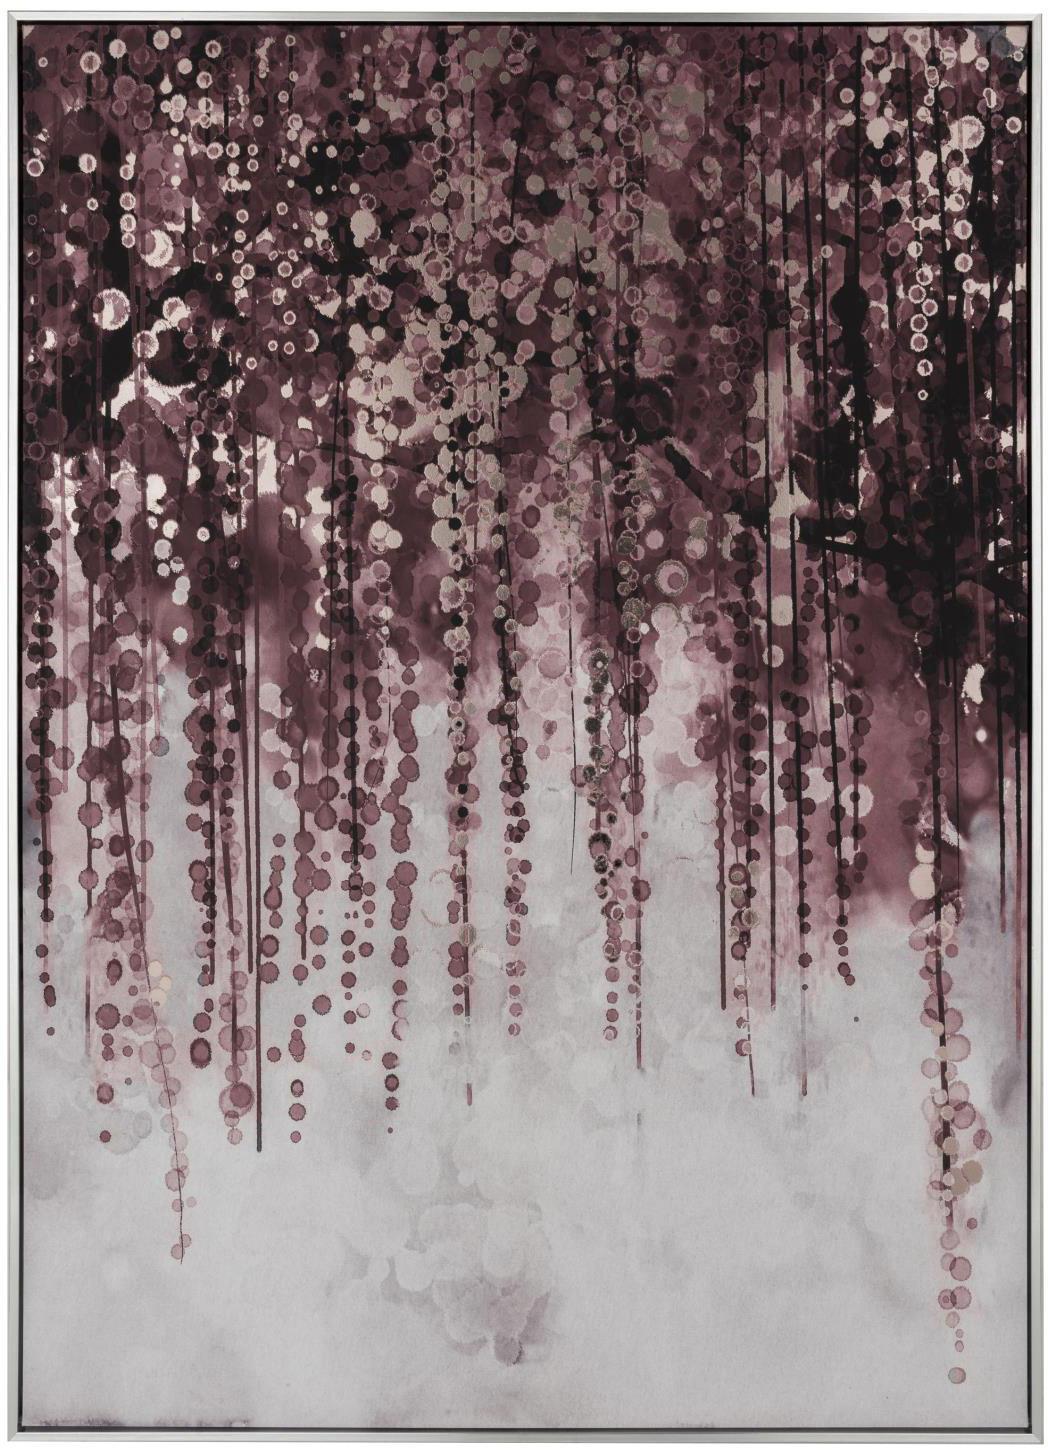 Leinwanddruck Willow, Rahmen: Kiefernholz, Kunststoff, , Bild: Leinwand, Lila,Braun,Grau, 103 x 143 cm